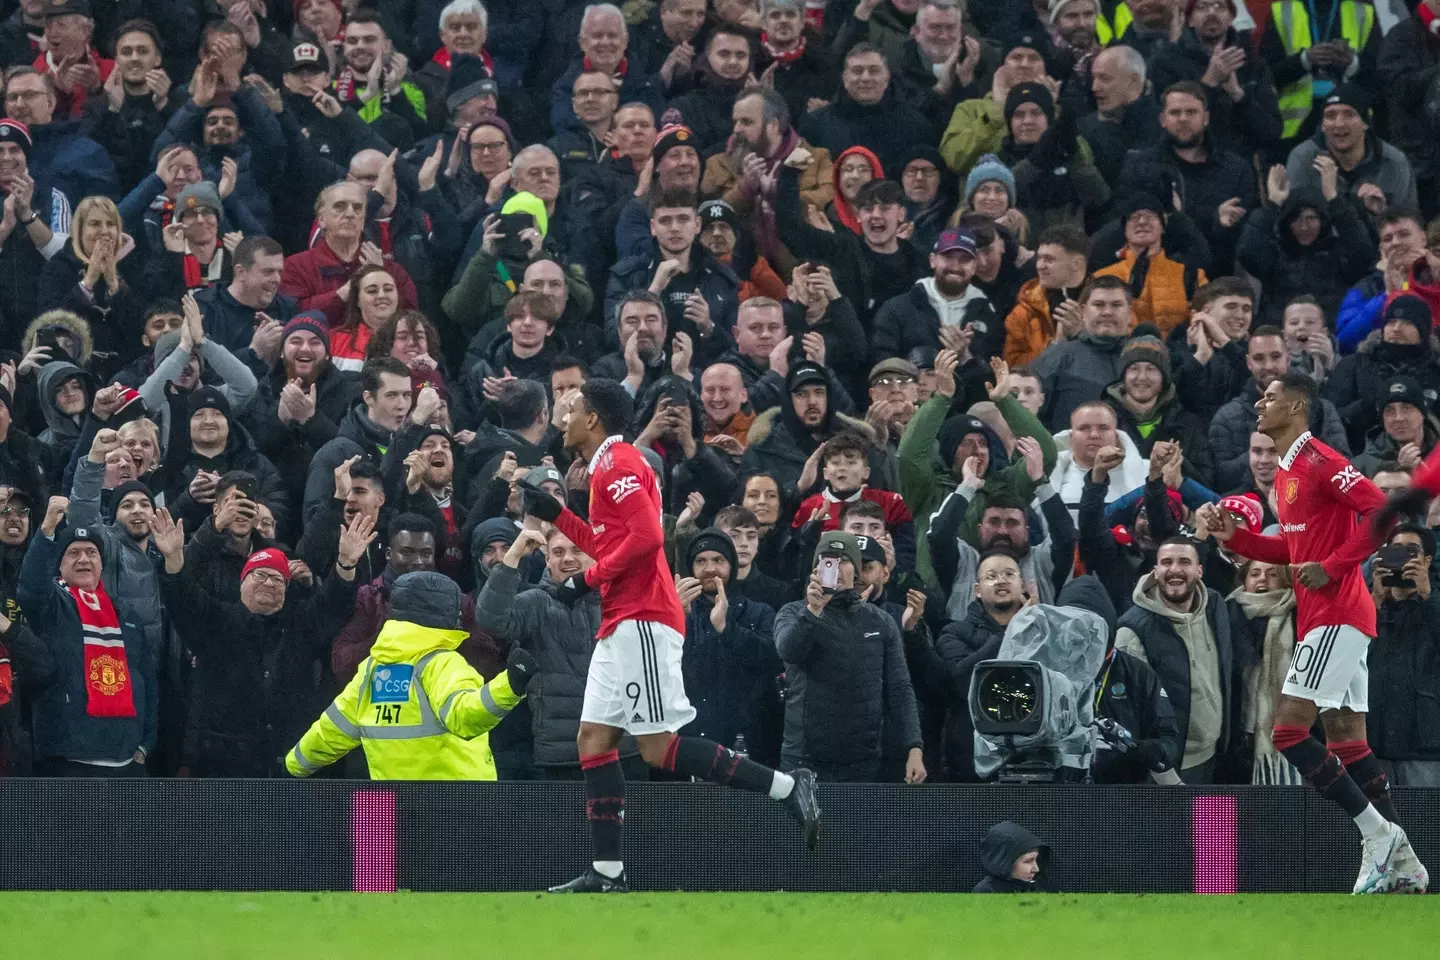 Anthony Martial celebrates scoring for Manchester United. Image: Alamy